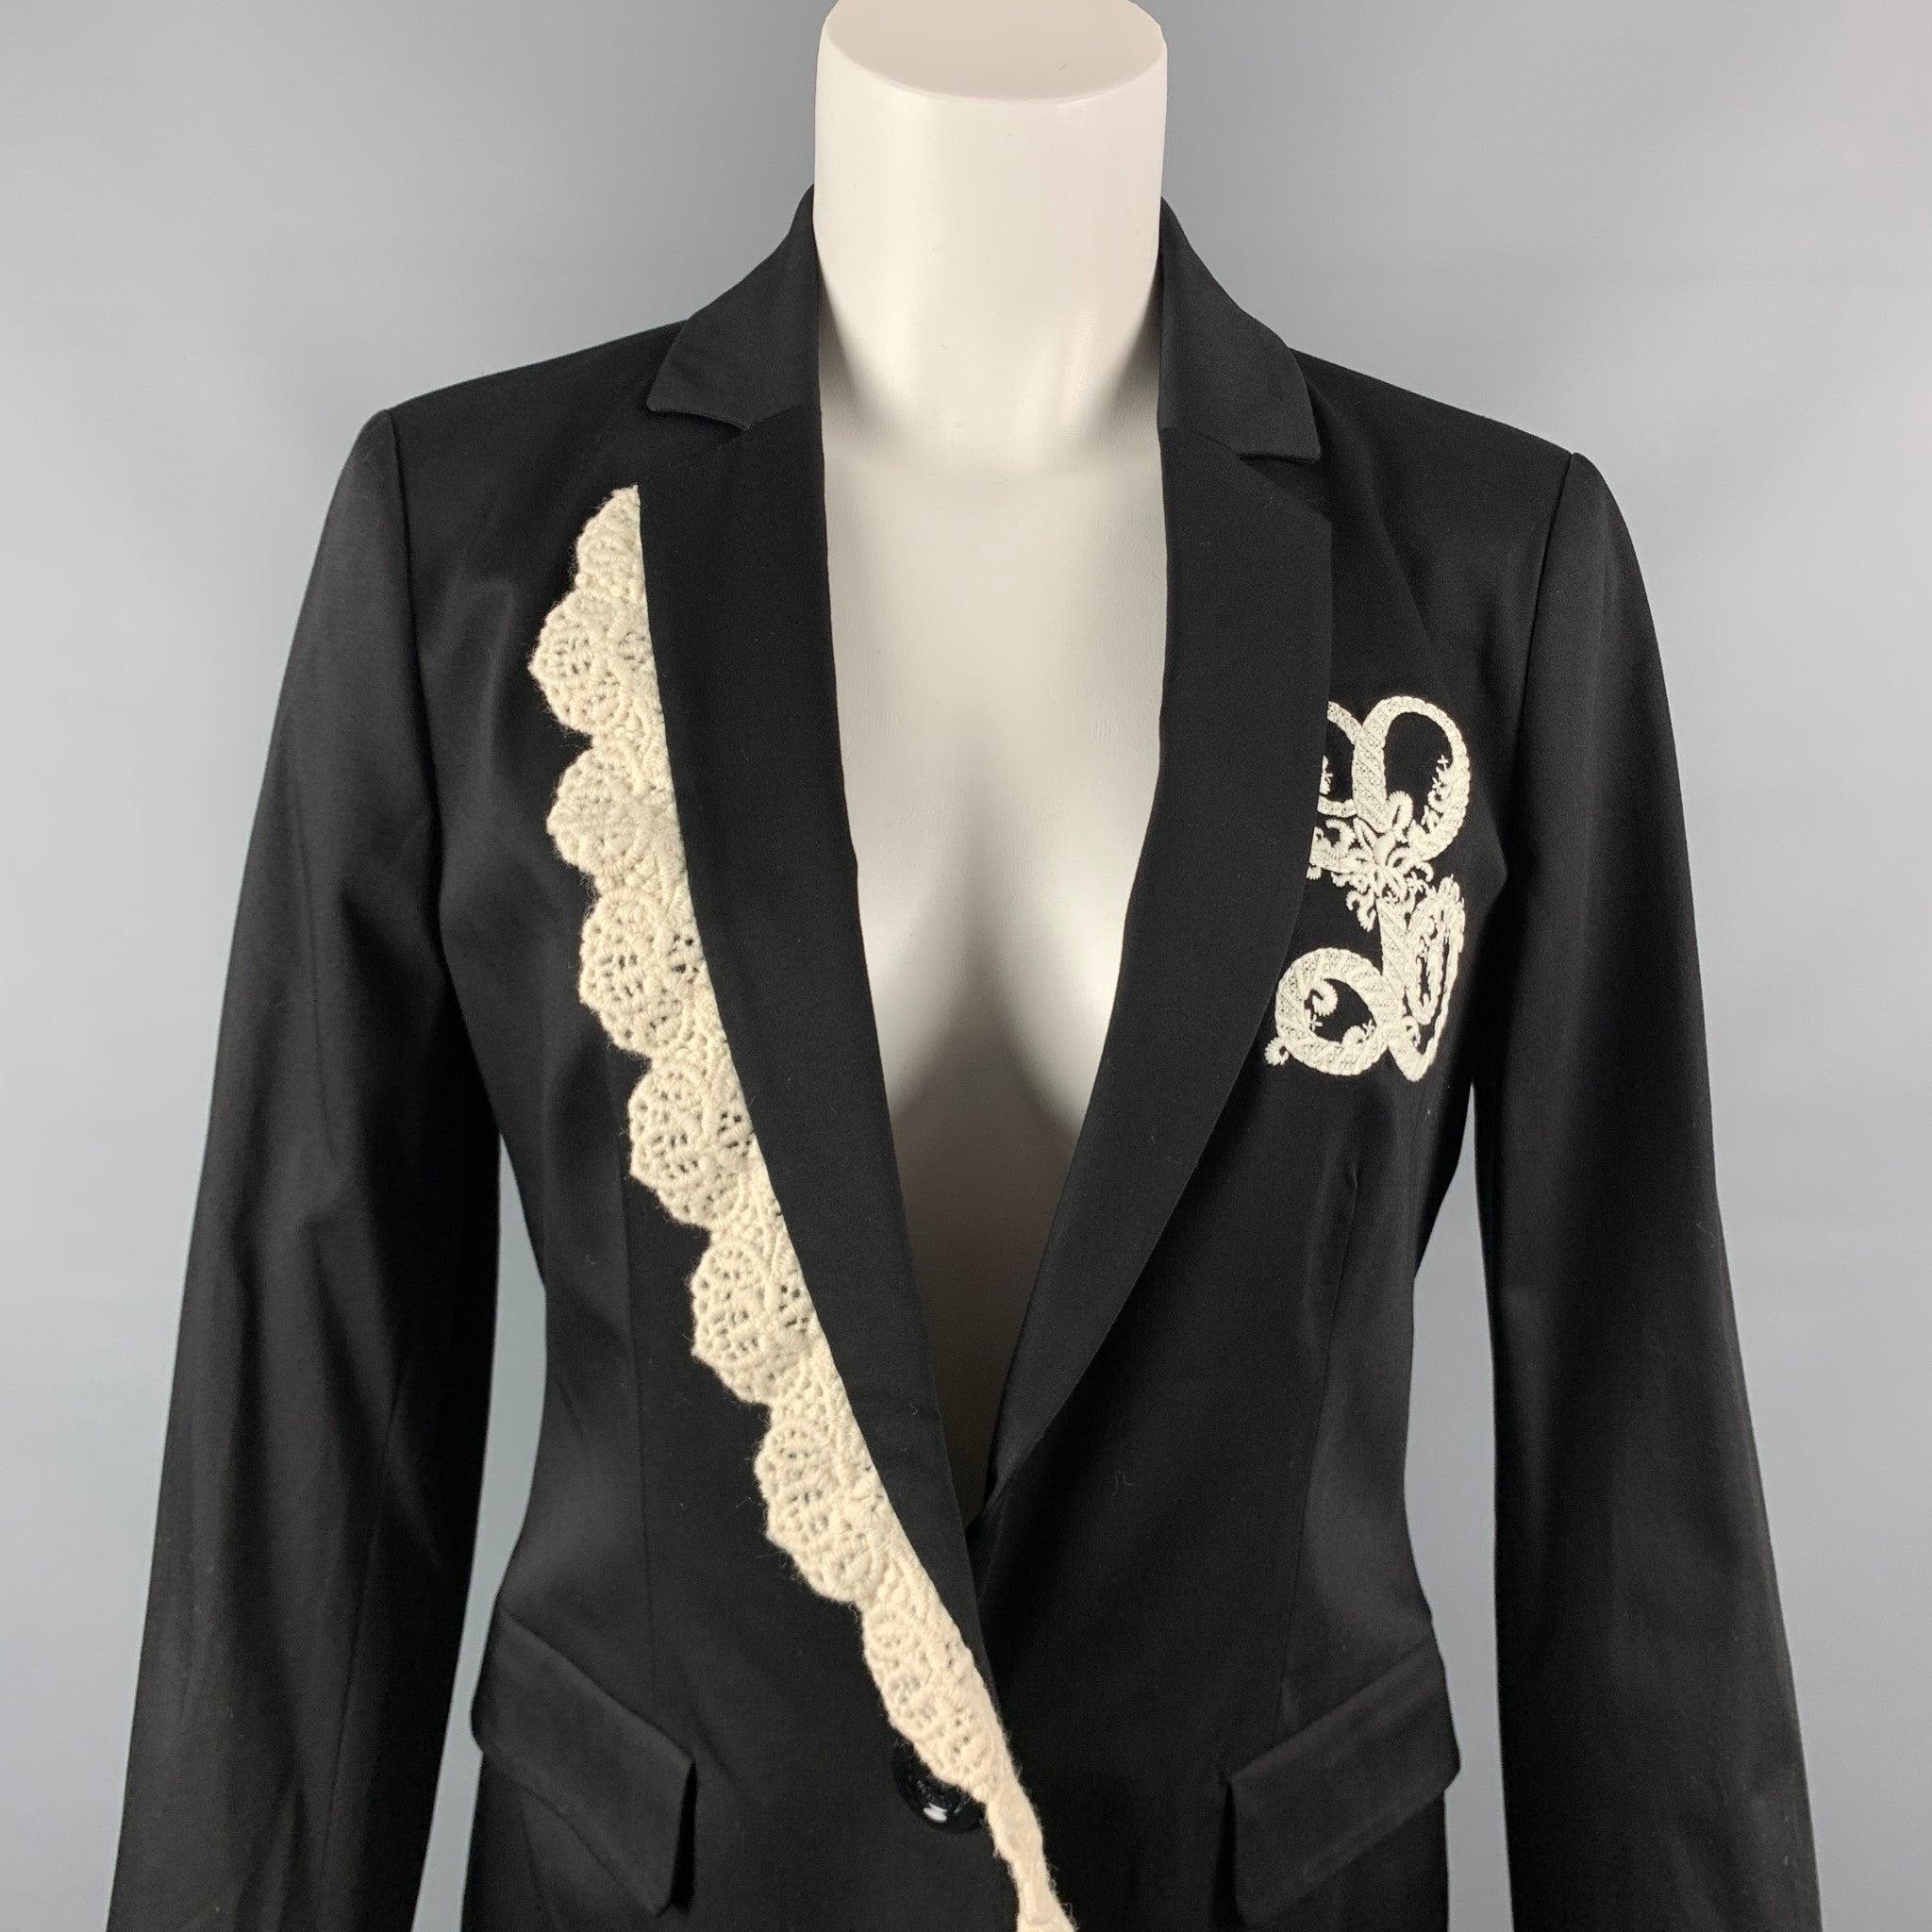 La veste LOVE MOSCHINO est réalisée en acétate/coton noir avec une doublure intégrale présentant des détails en crochet blanc, un revers à cran, des poches à rabat et une fermeture à bouton unique. Fabriqué en Italie. Nouveau avec étiquettes.